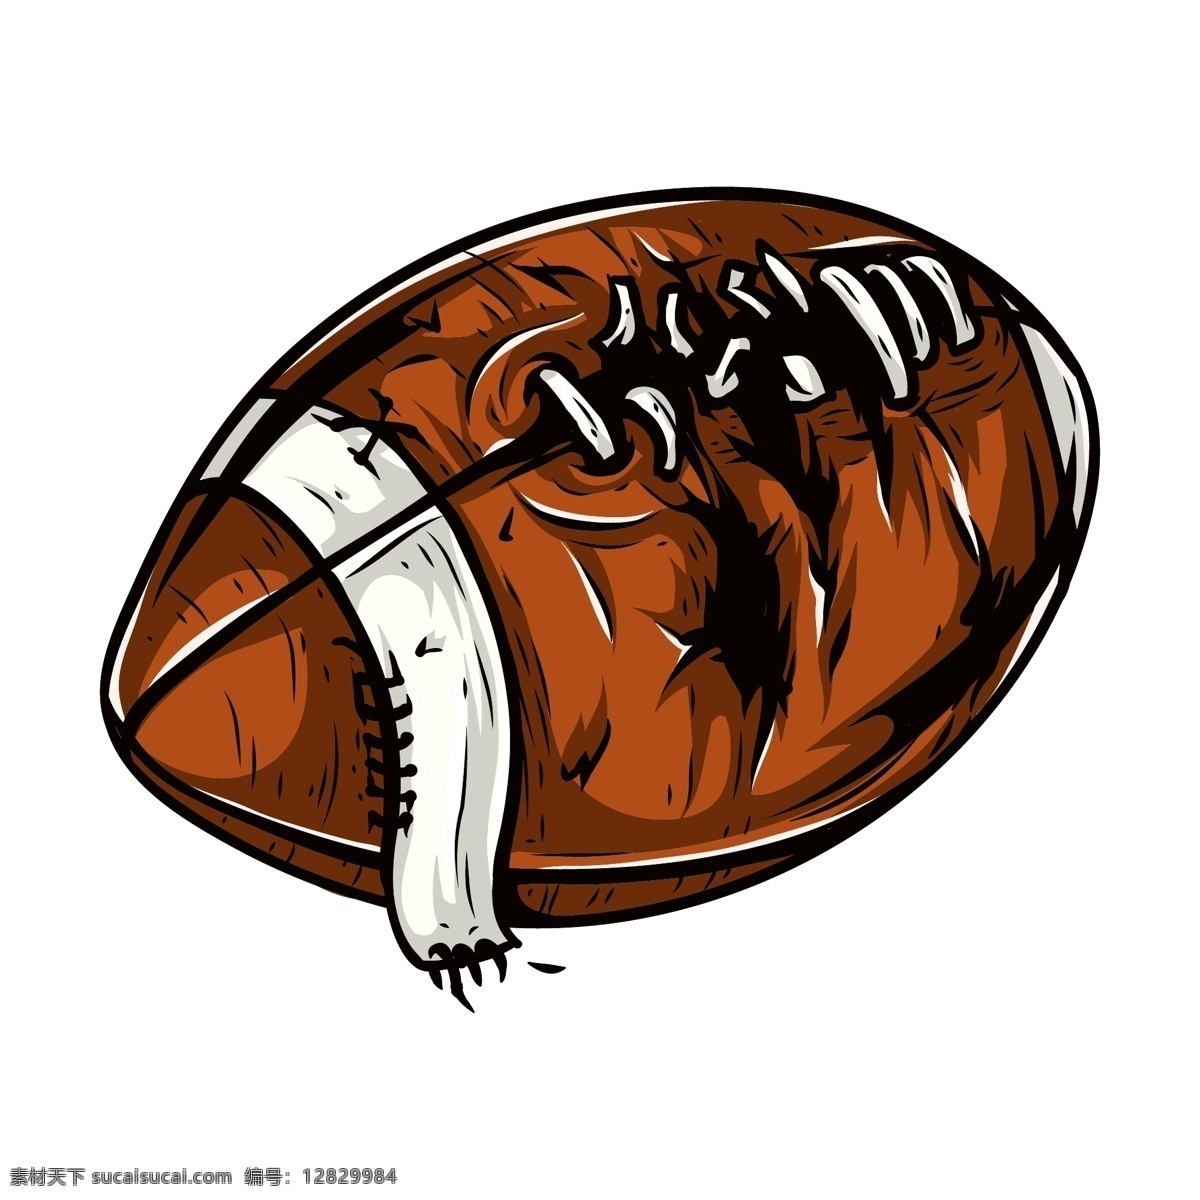 橄榄球运动 插画 橄榄球 体育运动 卡通漫画 卡通插画 生活百科 矢量素材 白色